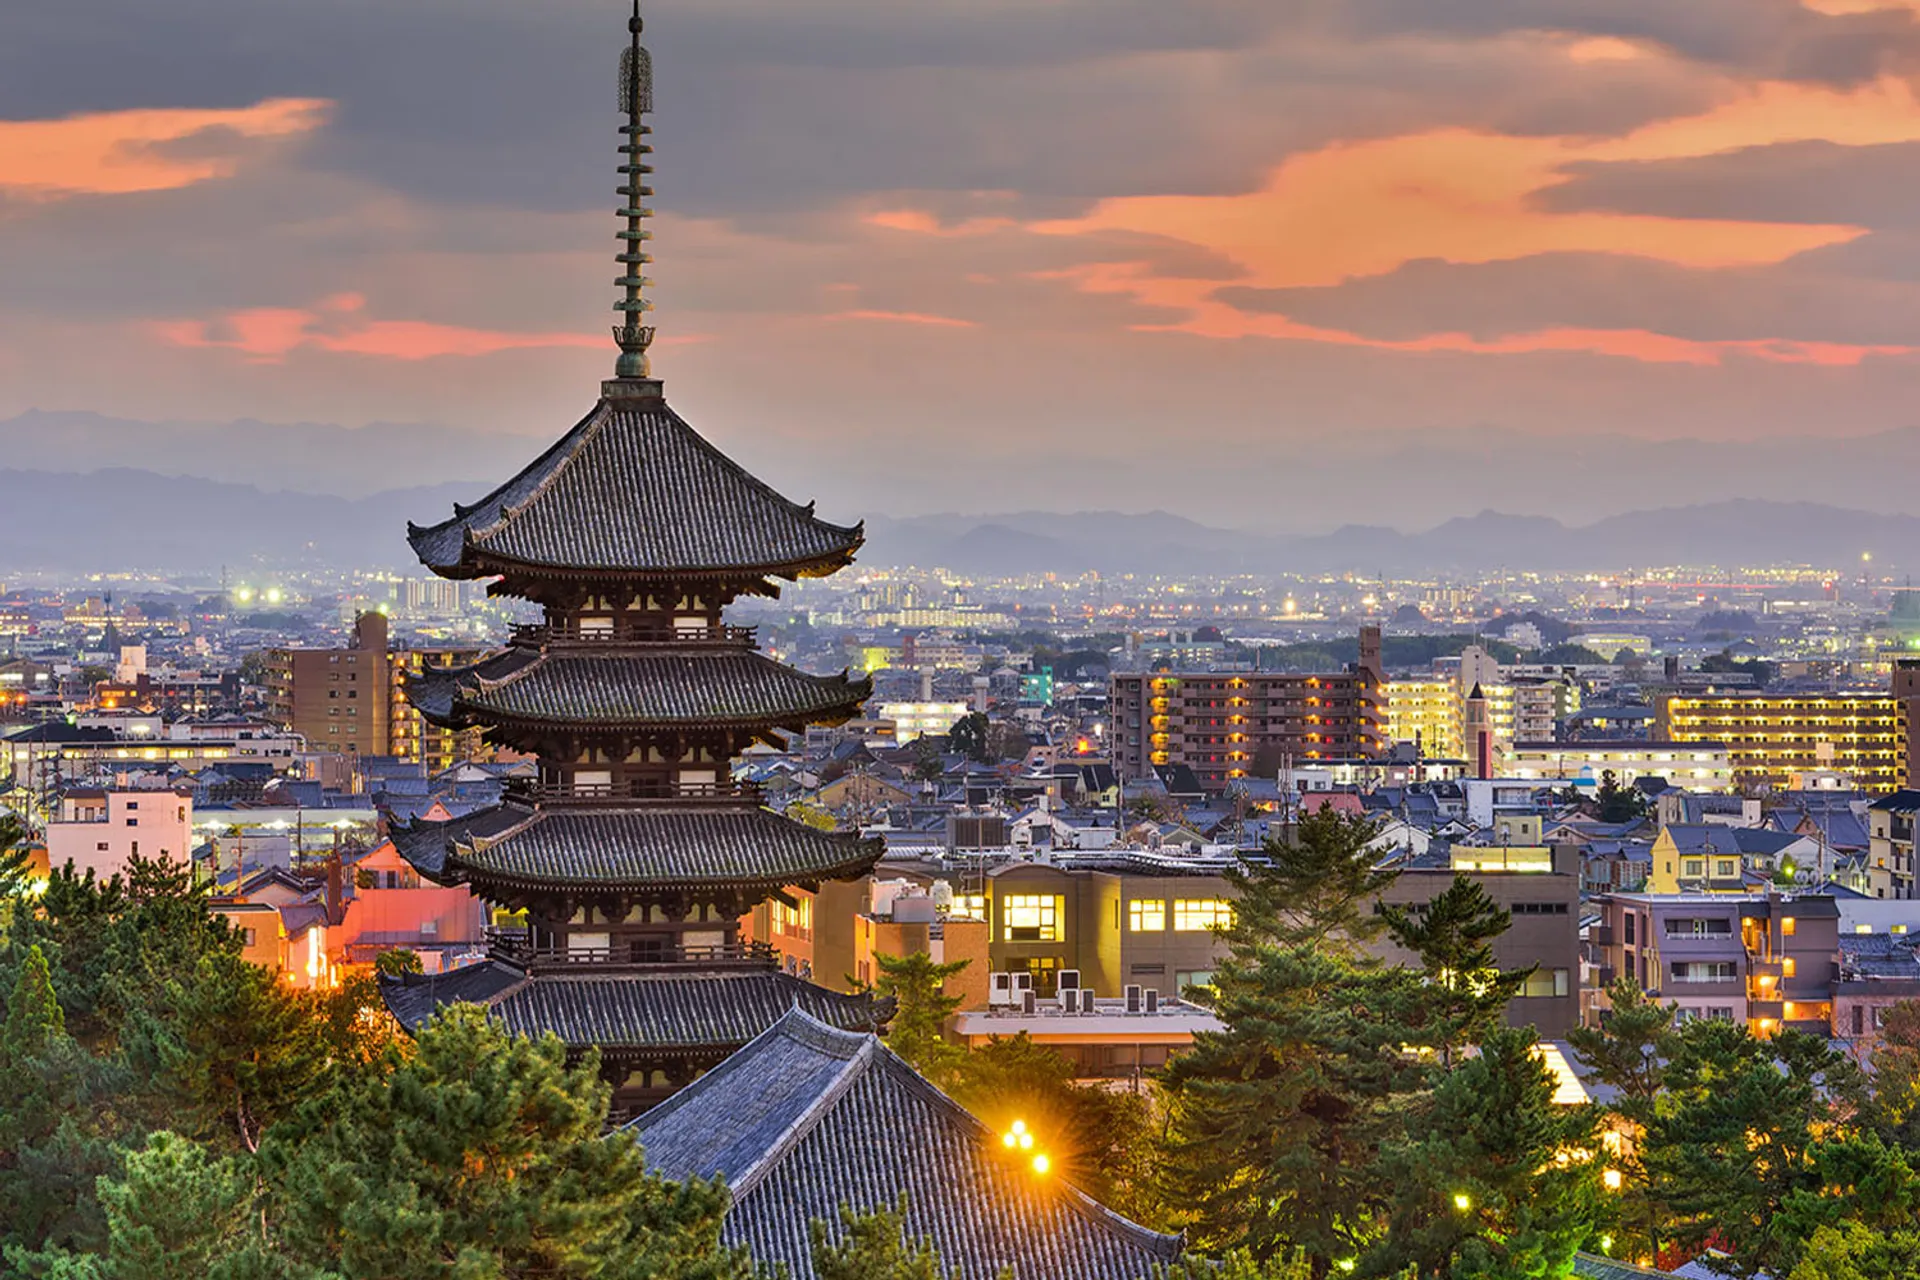 Combolist japan. Нара столица Японии. Киото древняя столица Японии. Древняя столица Японии - город Нара. Япония Нара Киото Токио.